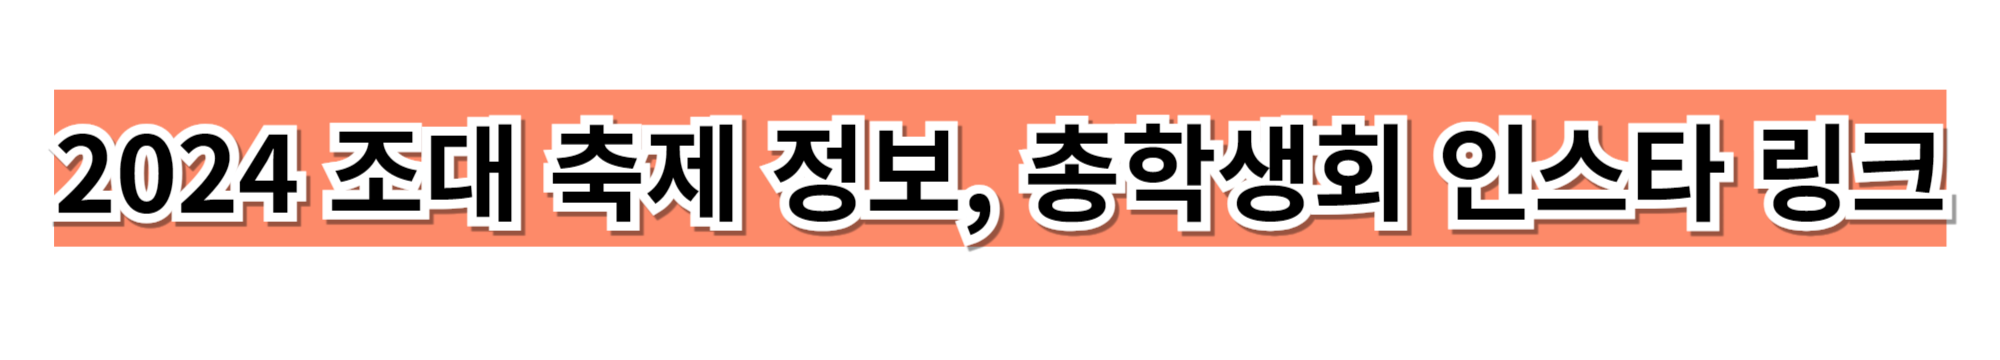 2024 조대 축제 정보, 총학생회 인스타 링크 사이트